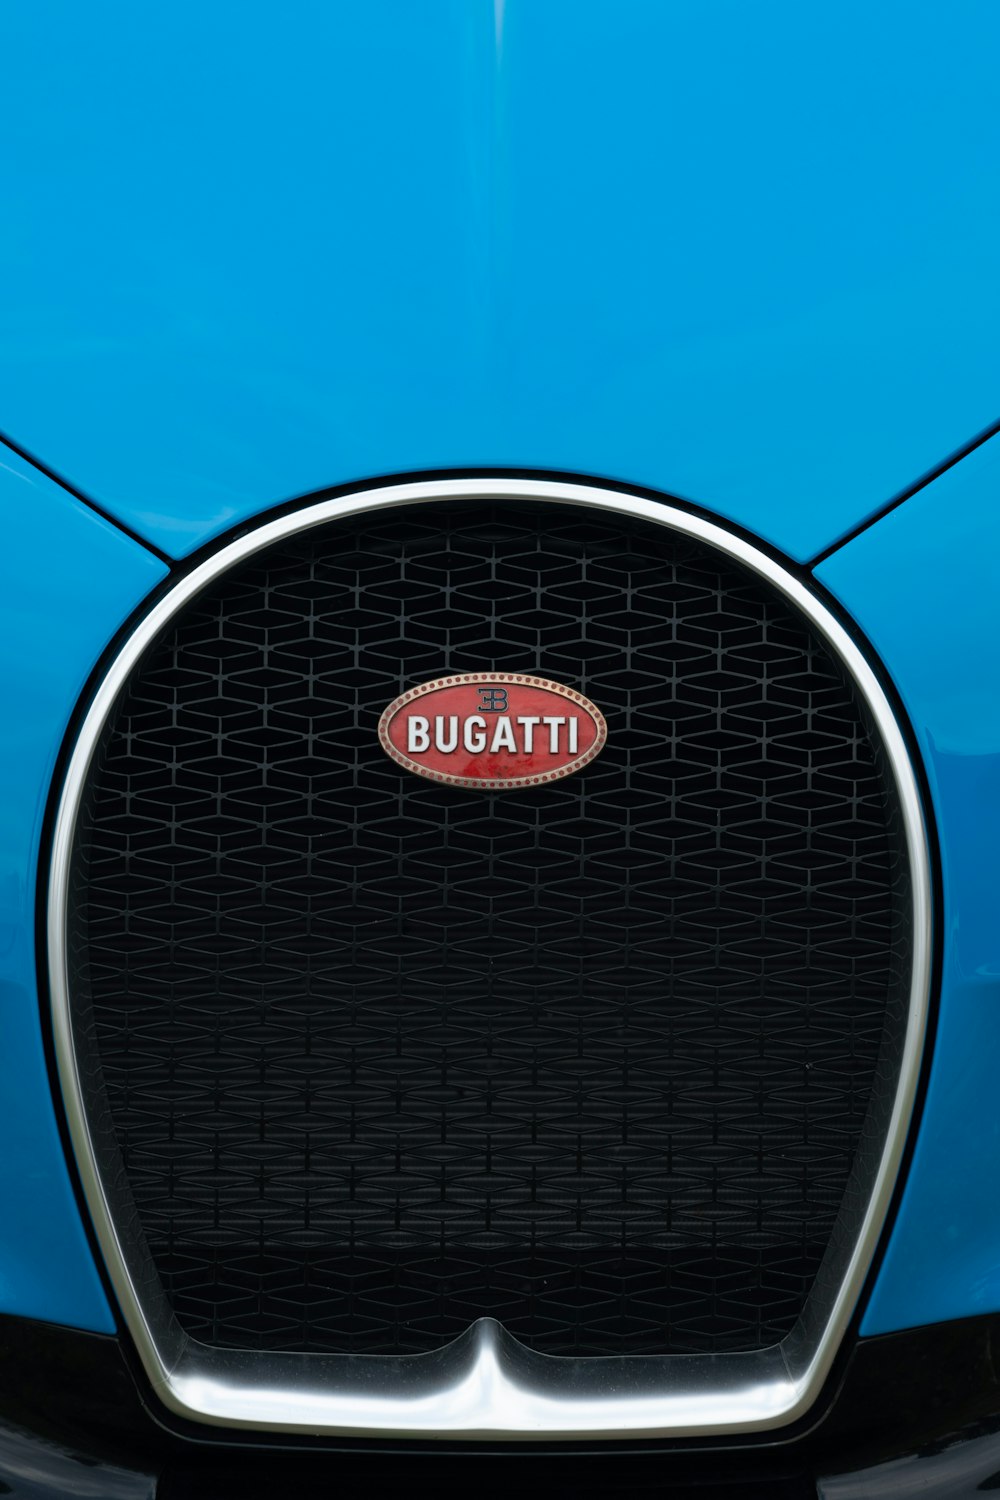 the front of a bugatti bugatti car